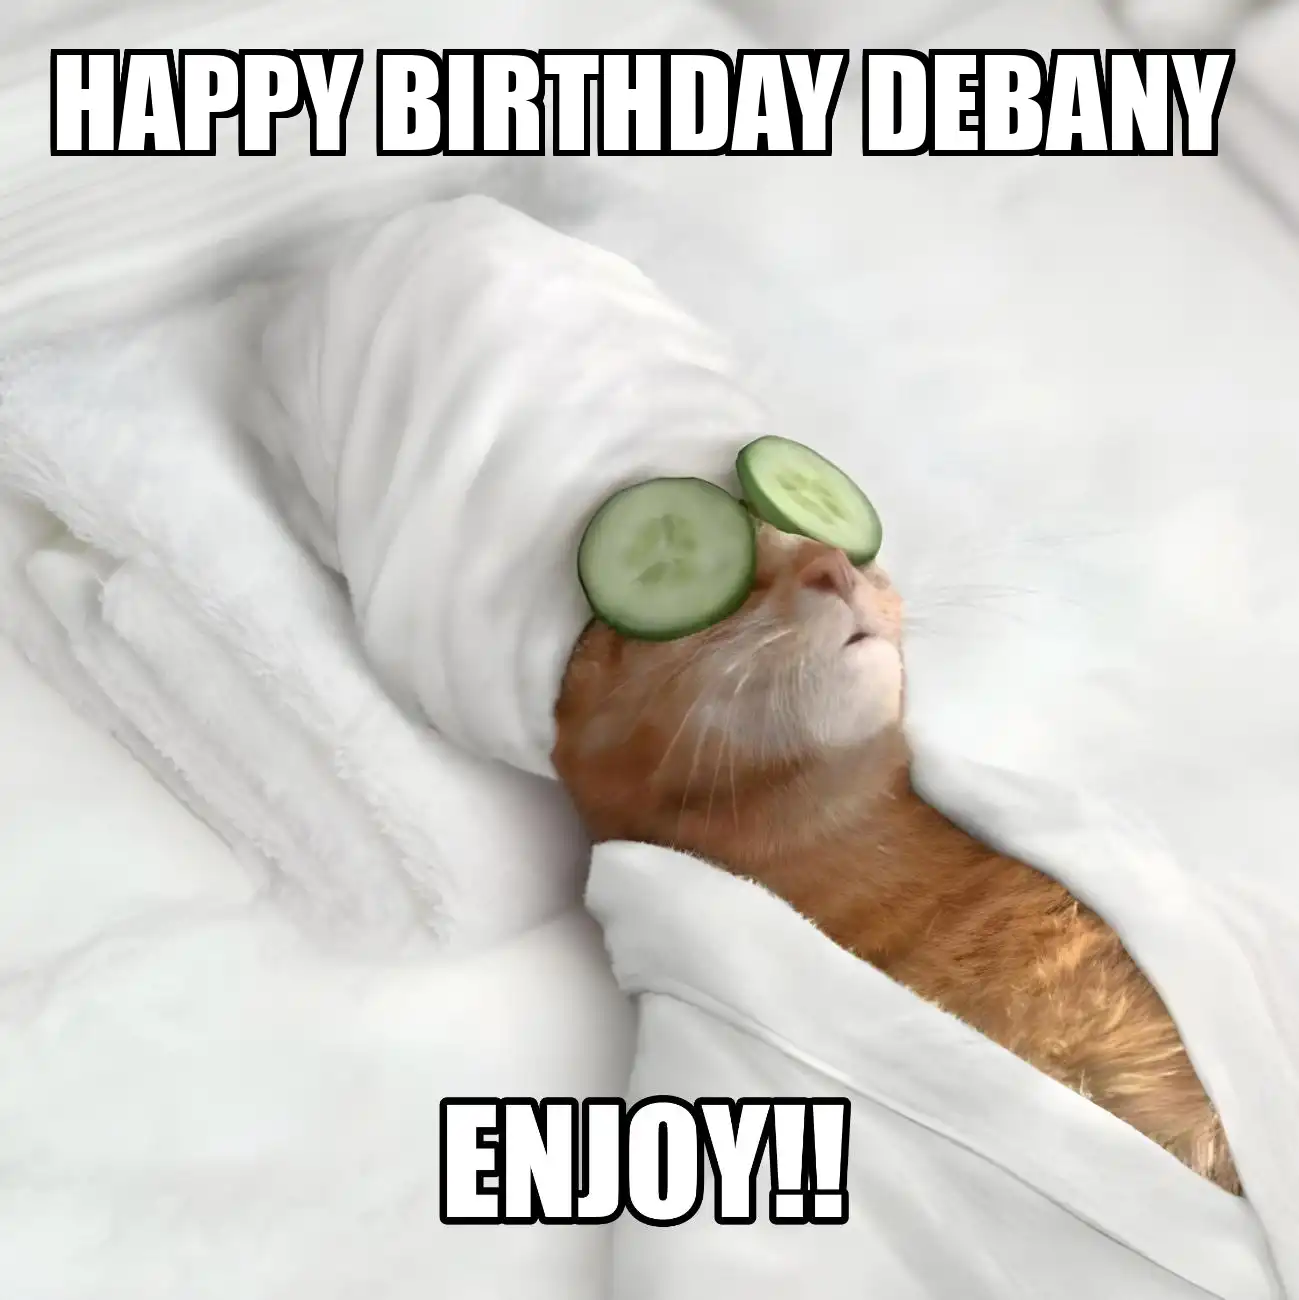 Happy Birthday Debany Enjoy Cat Meme